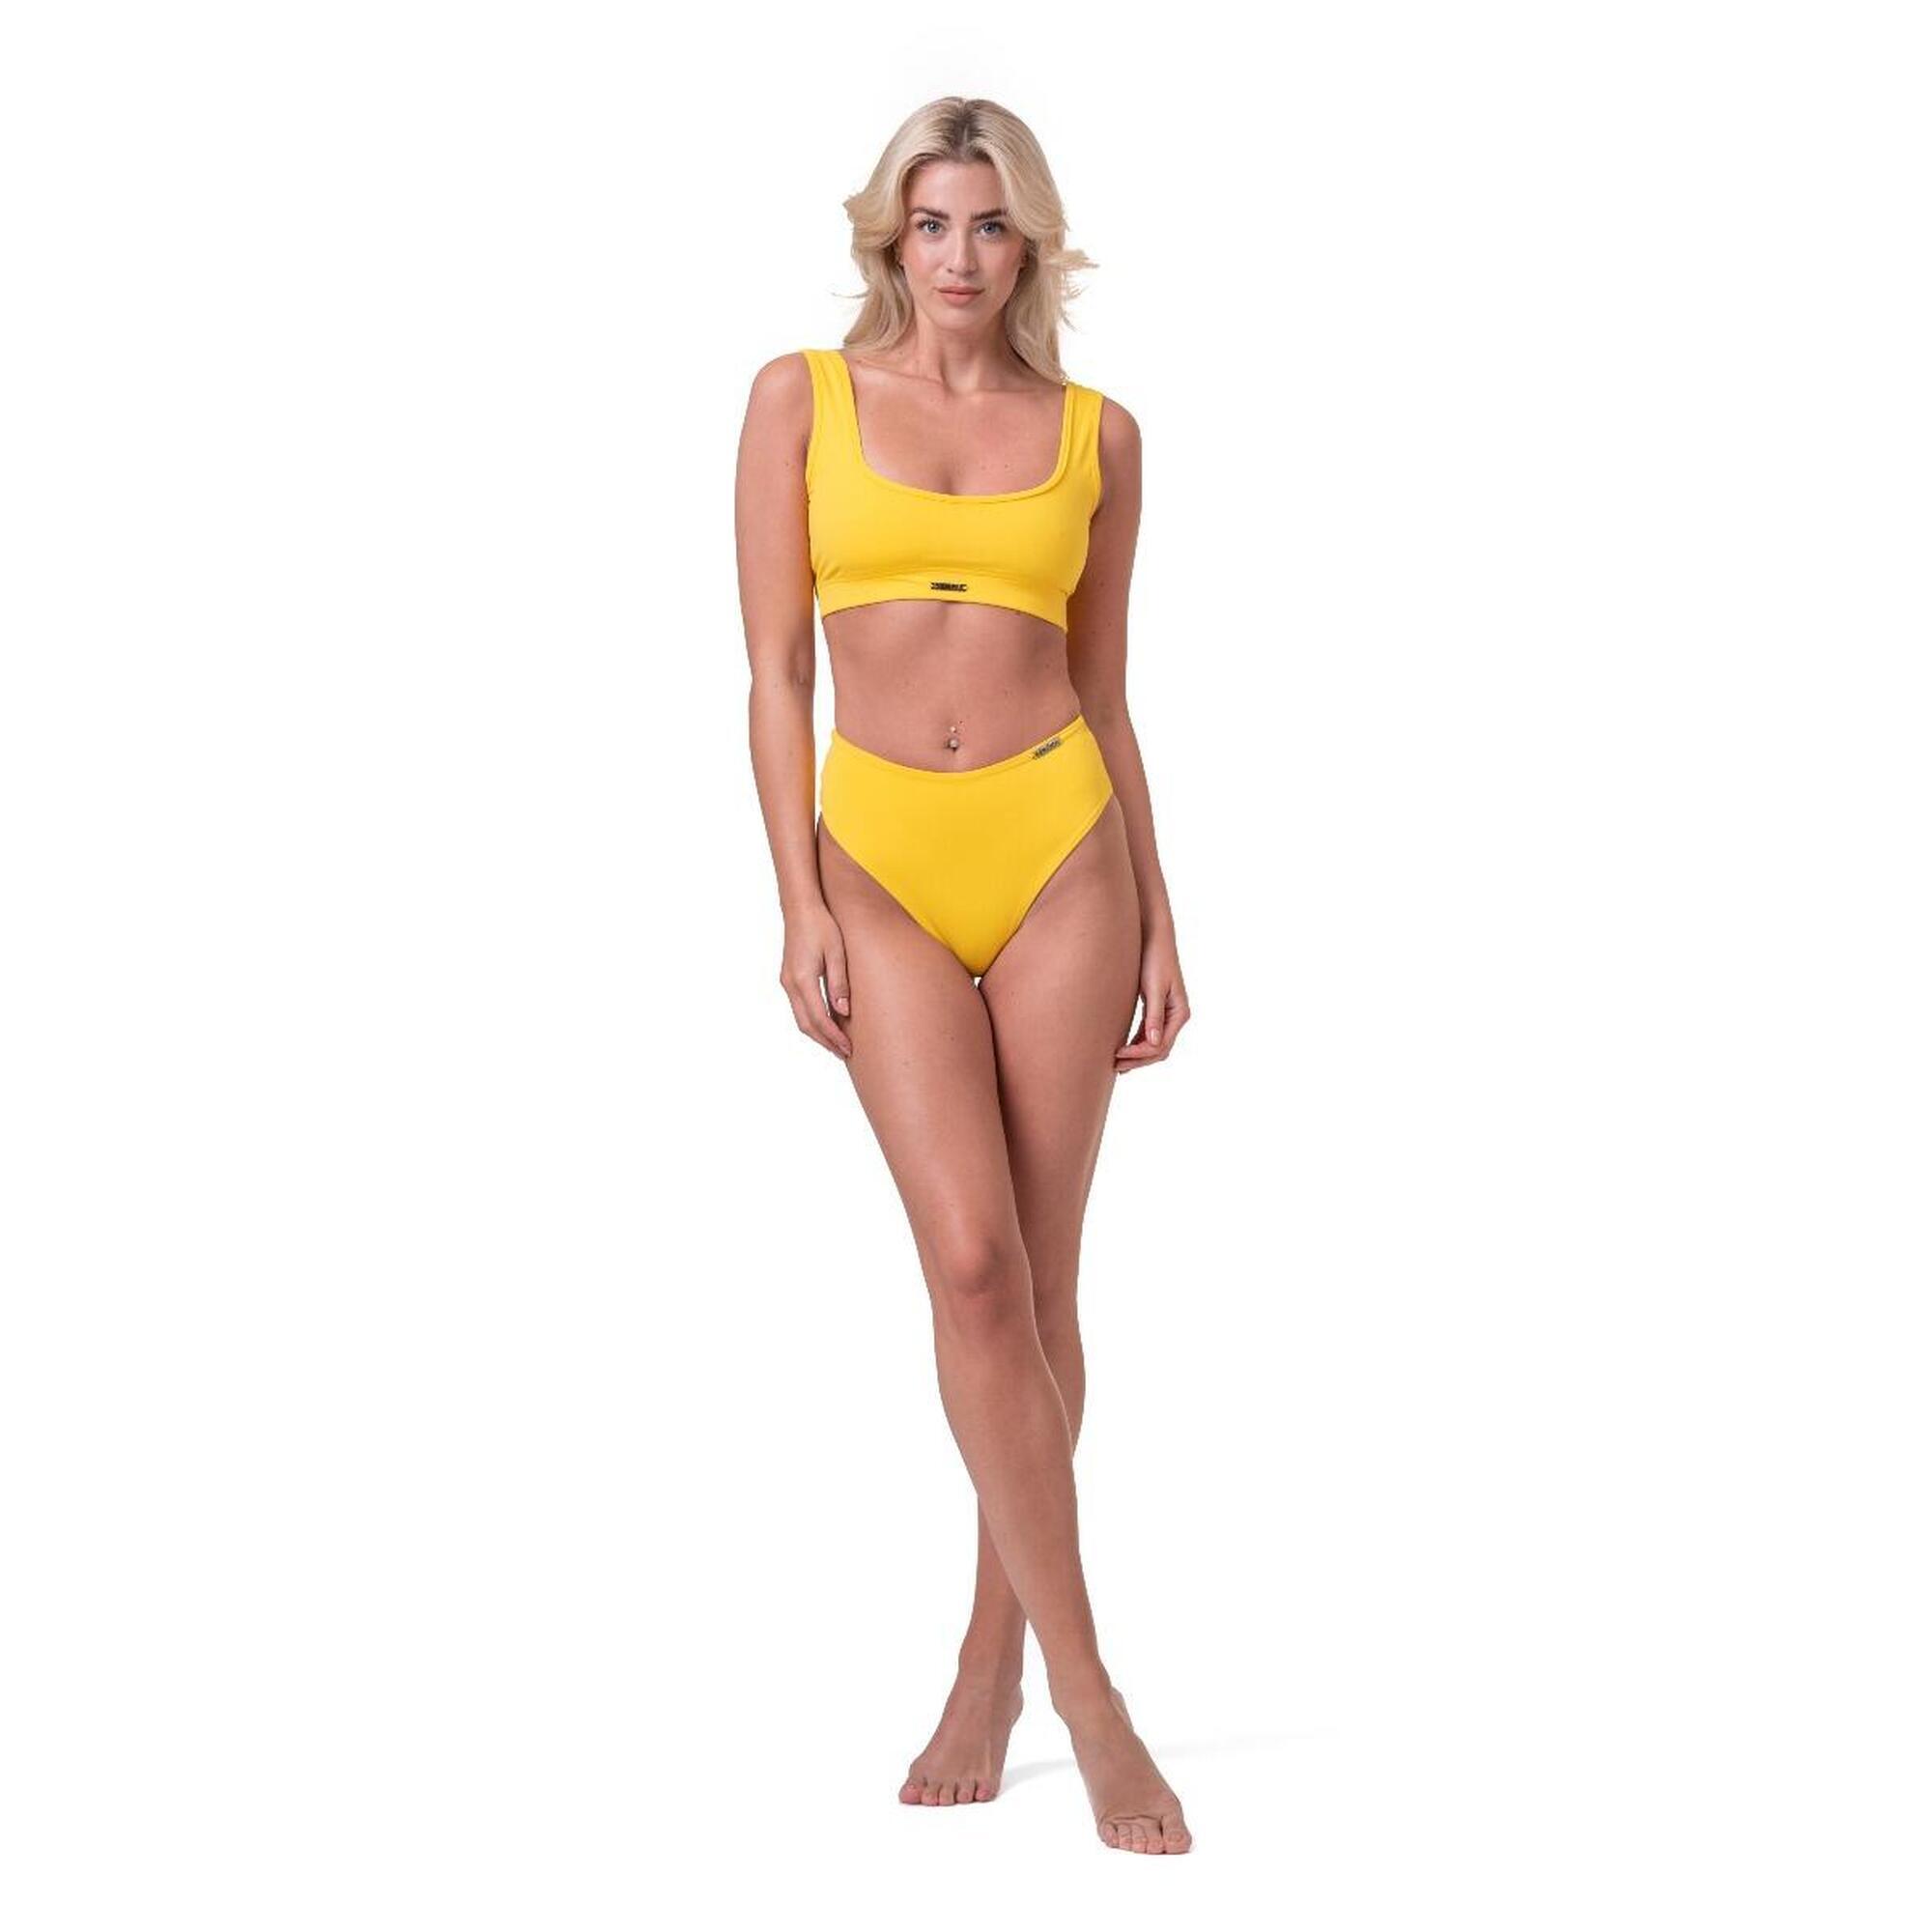 Miami Sporty Bikini Yellow górna część - Nebbia